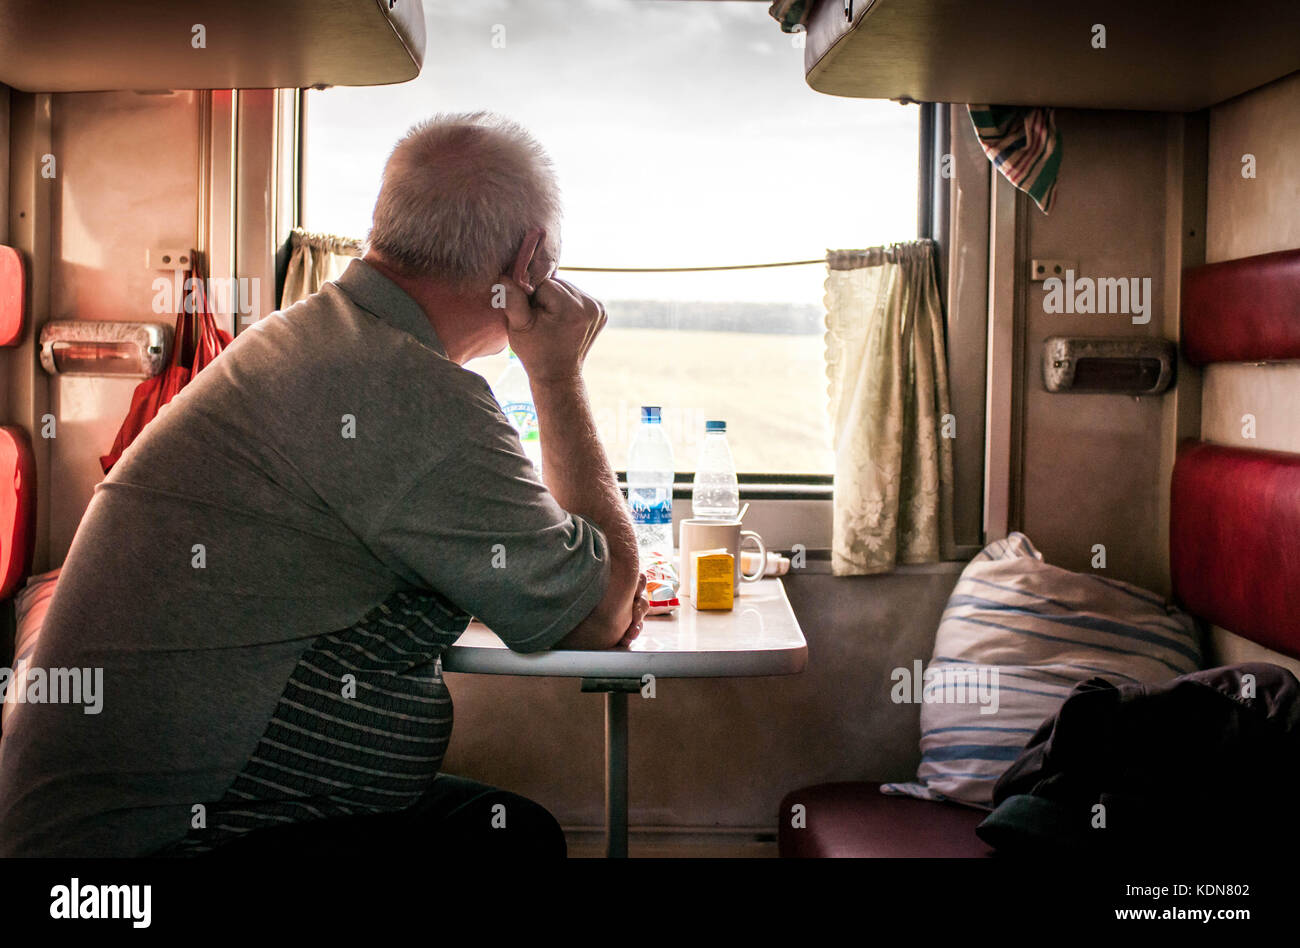 VLADIMIR, RUSSIE, MAI 19: UN voyageur contemple le paysage a travers la vitre de son compartiment a Bord du Transsiberien le 19 Mai 2011 a Vladimir, R Stockfoto